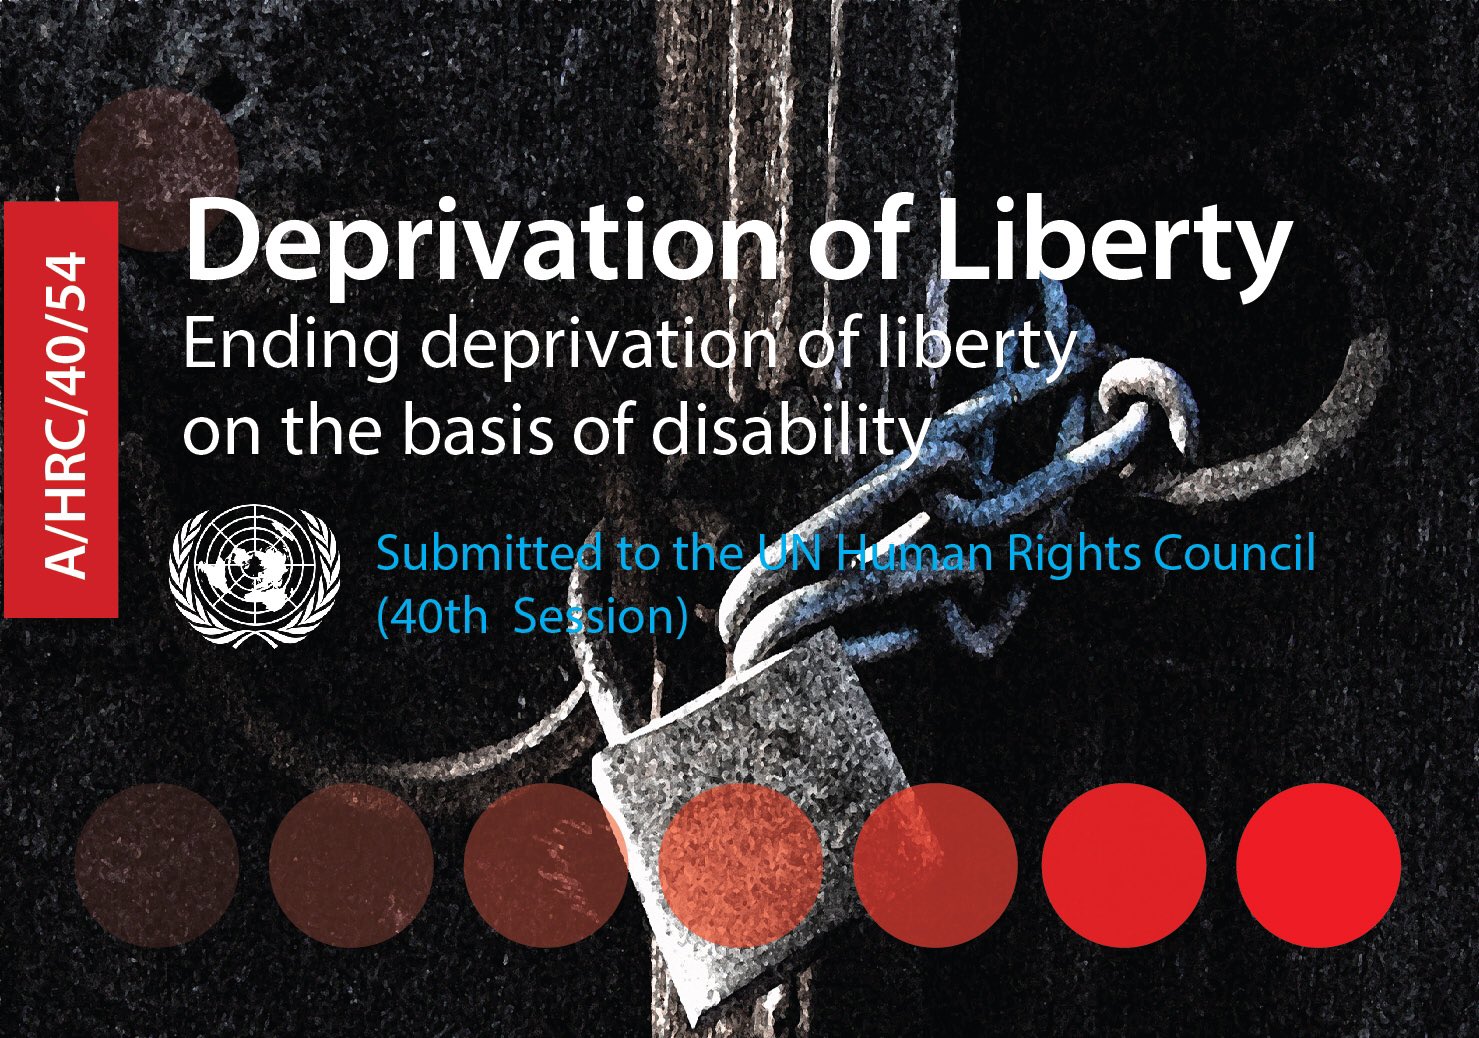 Couverture de présentation du rapport en anglais "Deprivation of liberty - Ending deprivation of liberty on the basis of disability". Photo couleur d'un cadenas avec des chaînes. 